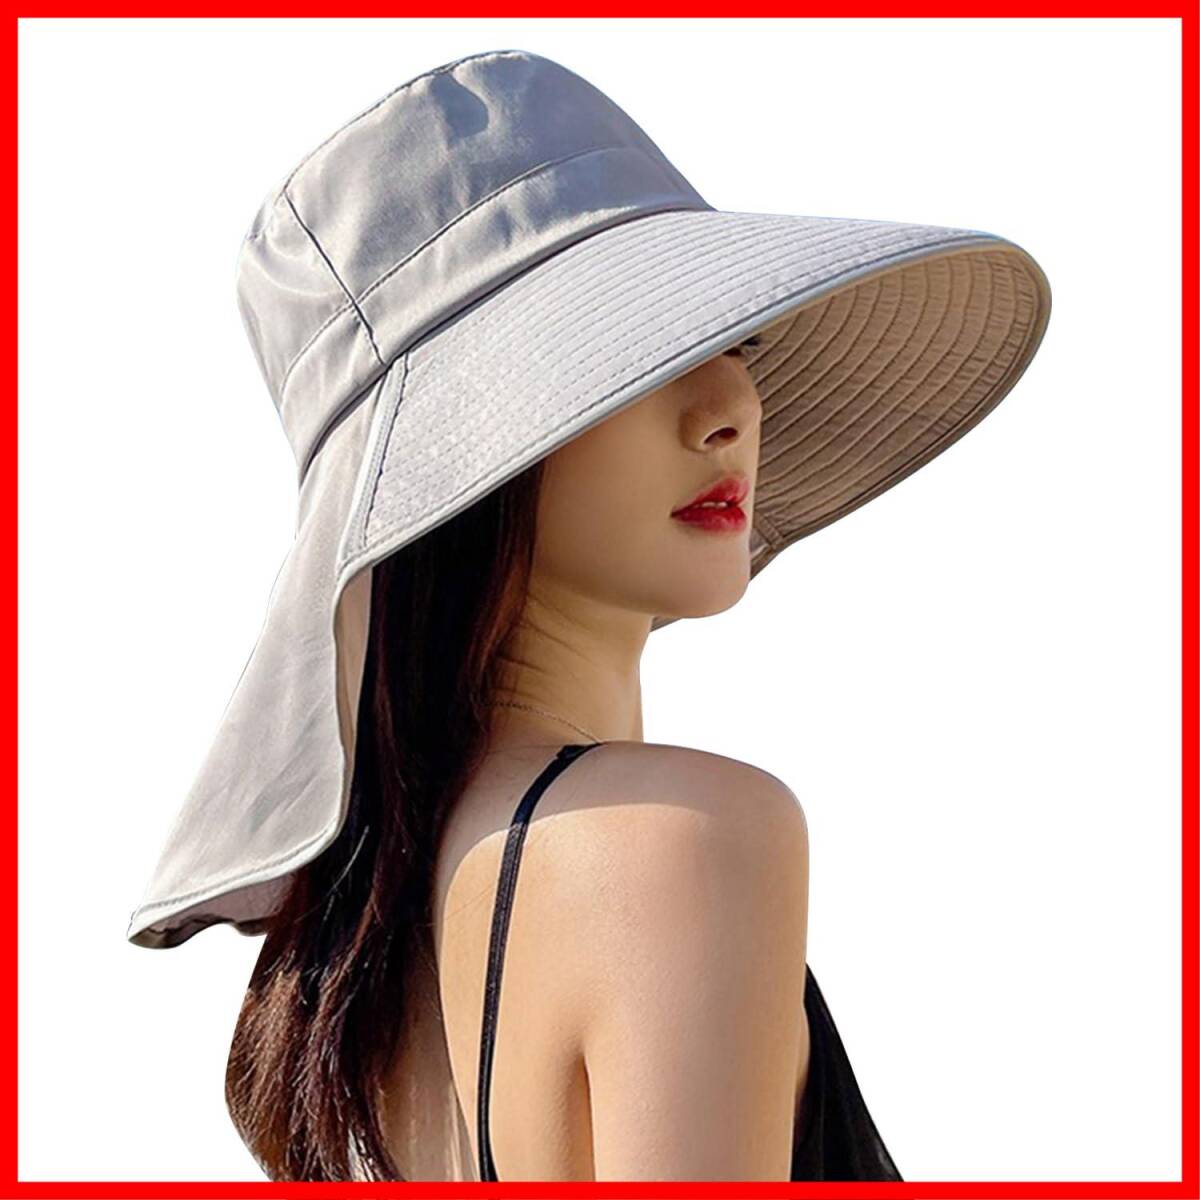 【特価セール】[ARSZHORSVS] 帽子 レディース uvカット 日焼け防止 つば広 日除け帽子 ハット【軽量・通気性・小顔効